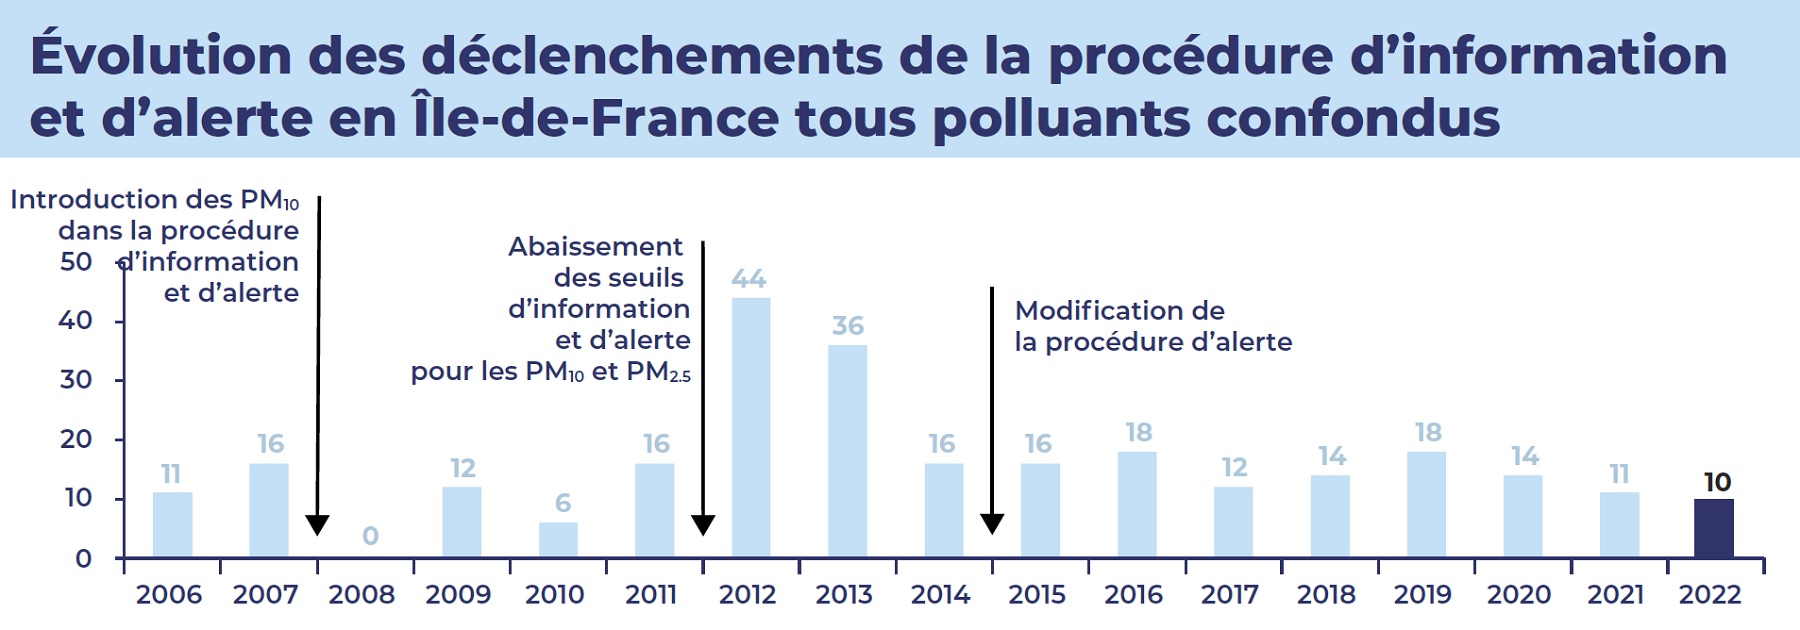 Graphique représentant l'évolution des déclenchements de la procédure d'information et d'alerte en Île-de-France tous polluants confondus